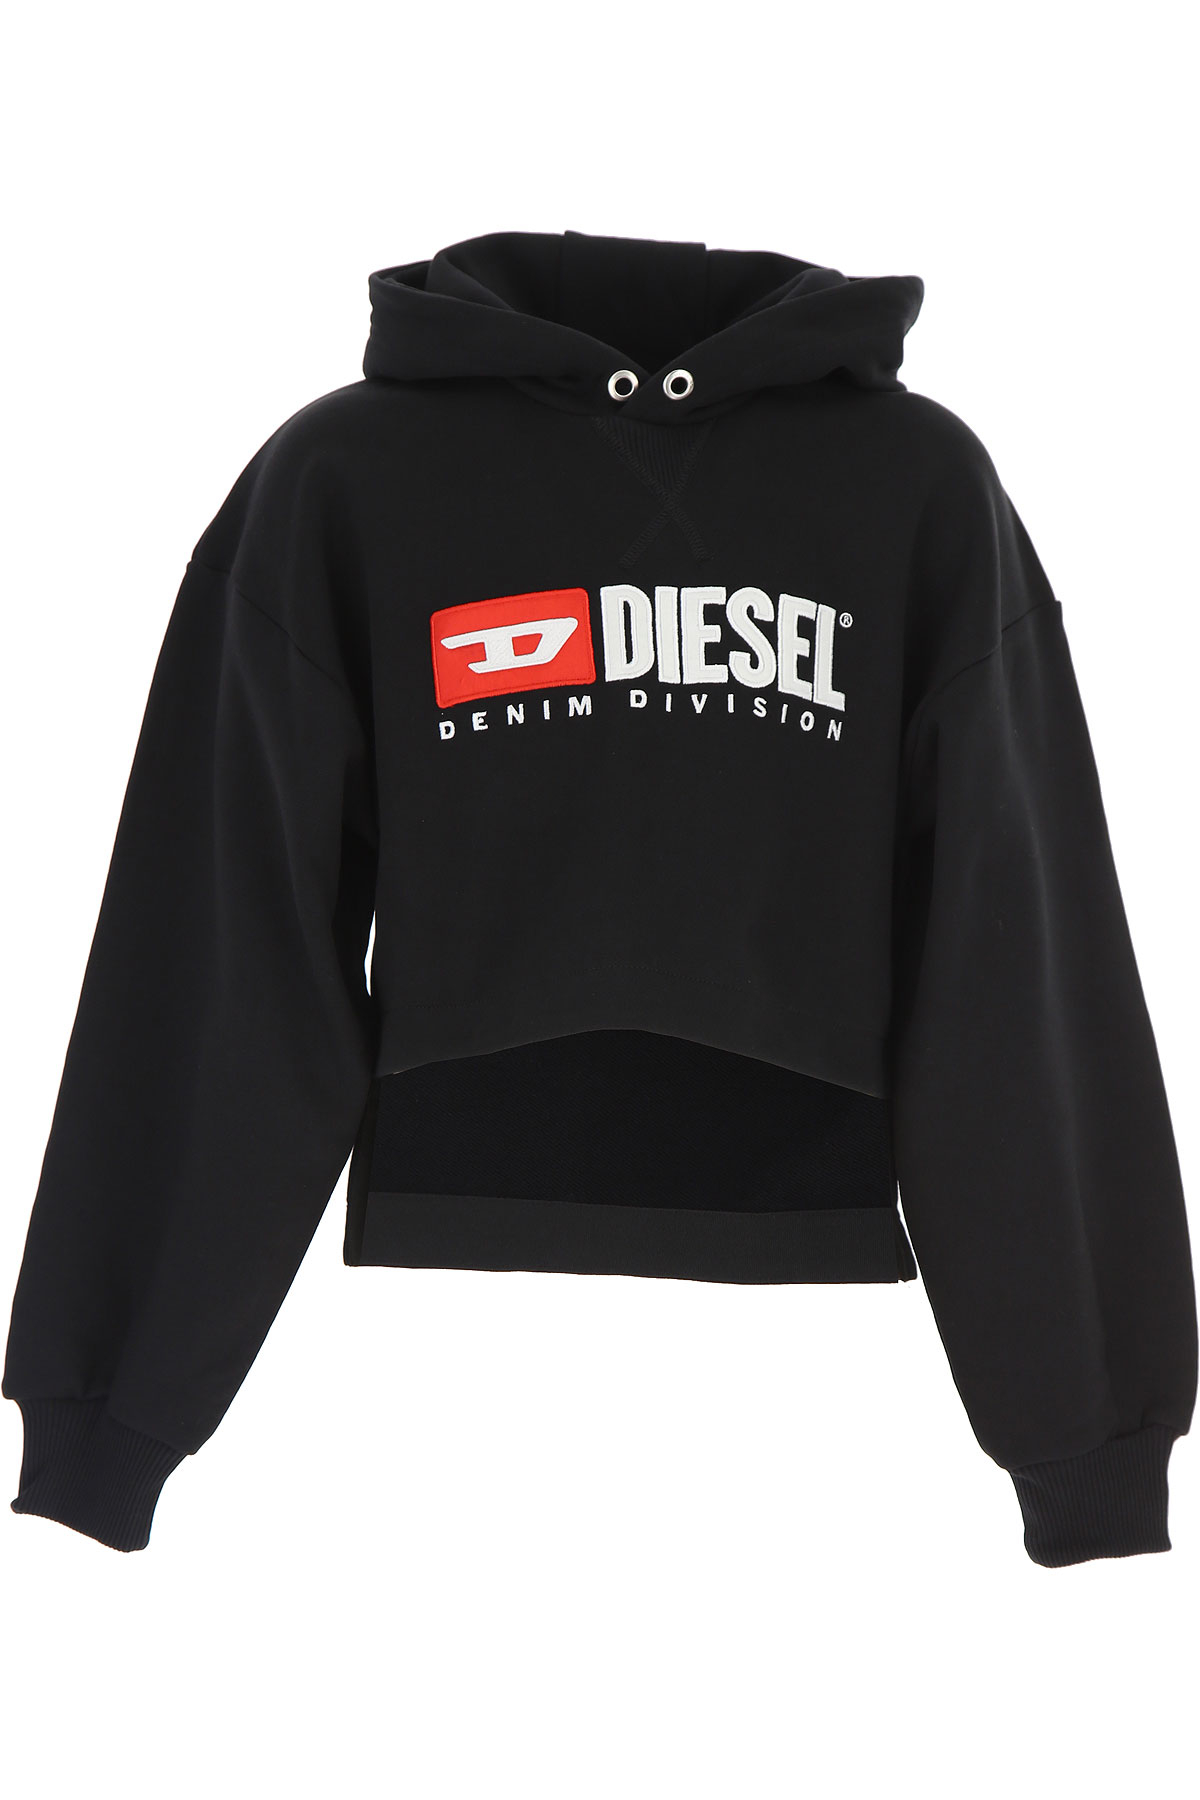 Diesel Kinder Sweatshirt & Kapuzenpullover für Mädchen Günstig im Sale, Schwarz, Baumwolle, 2017, 14Y 16Y